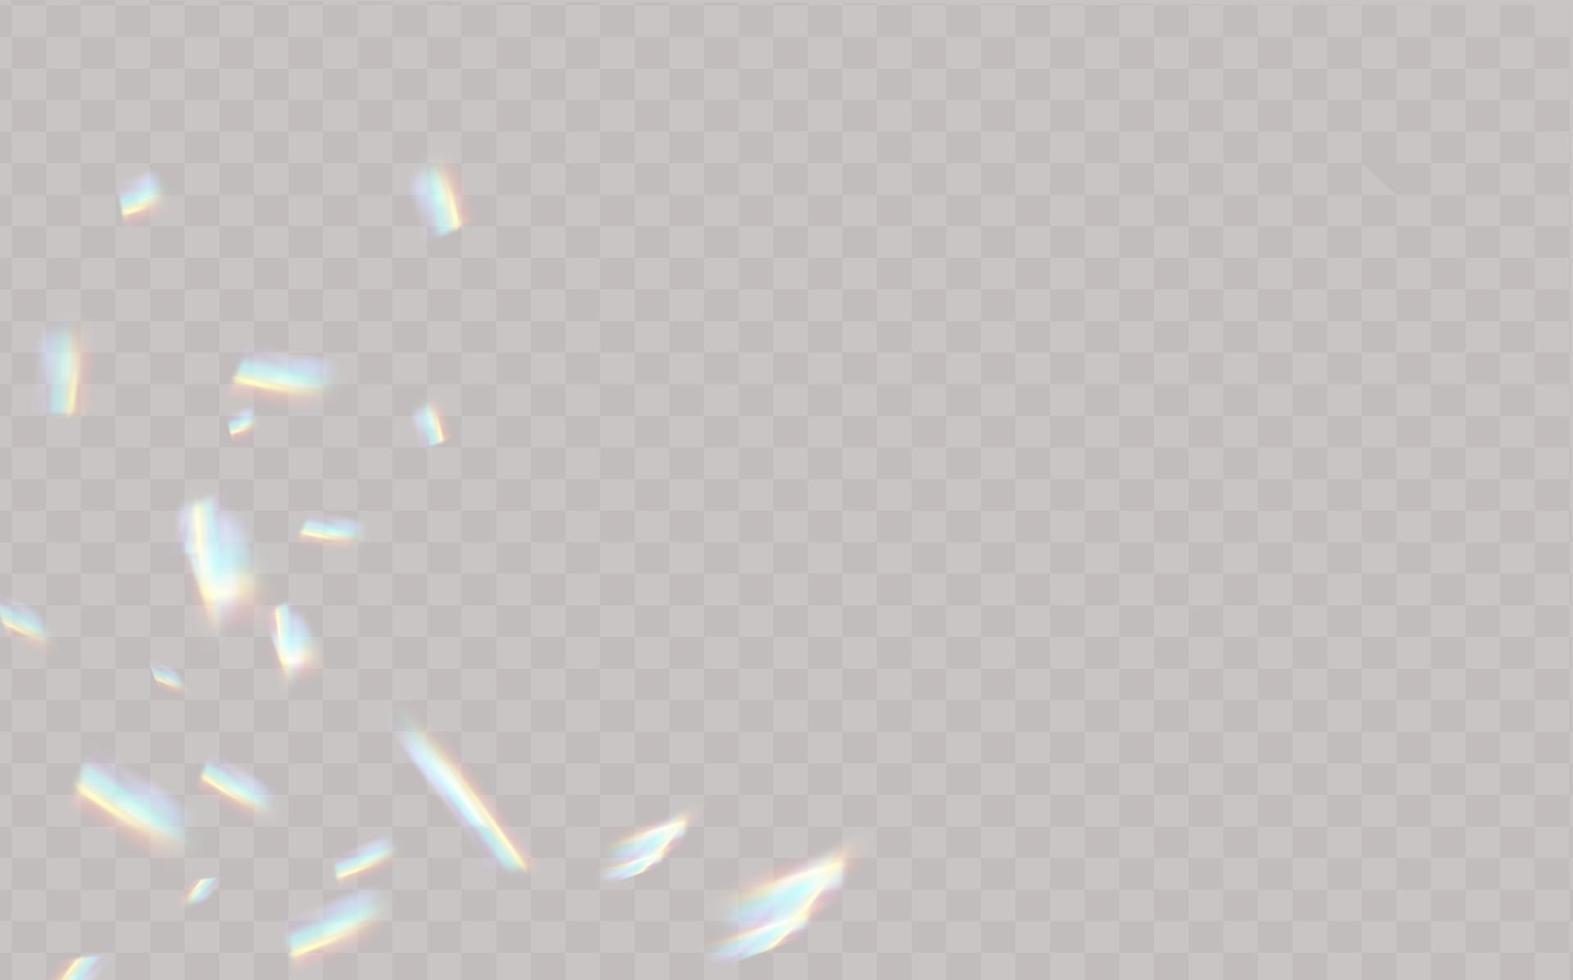 regenbogen-highlights auf schwarzem hintergrund.blendung oder reflexion von wasser und glas.glitzernde partikel für social-media-hintergründe, produktpräsentationen, fotoaufnahmen. vektor